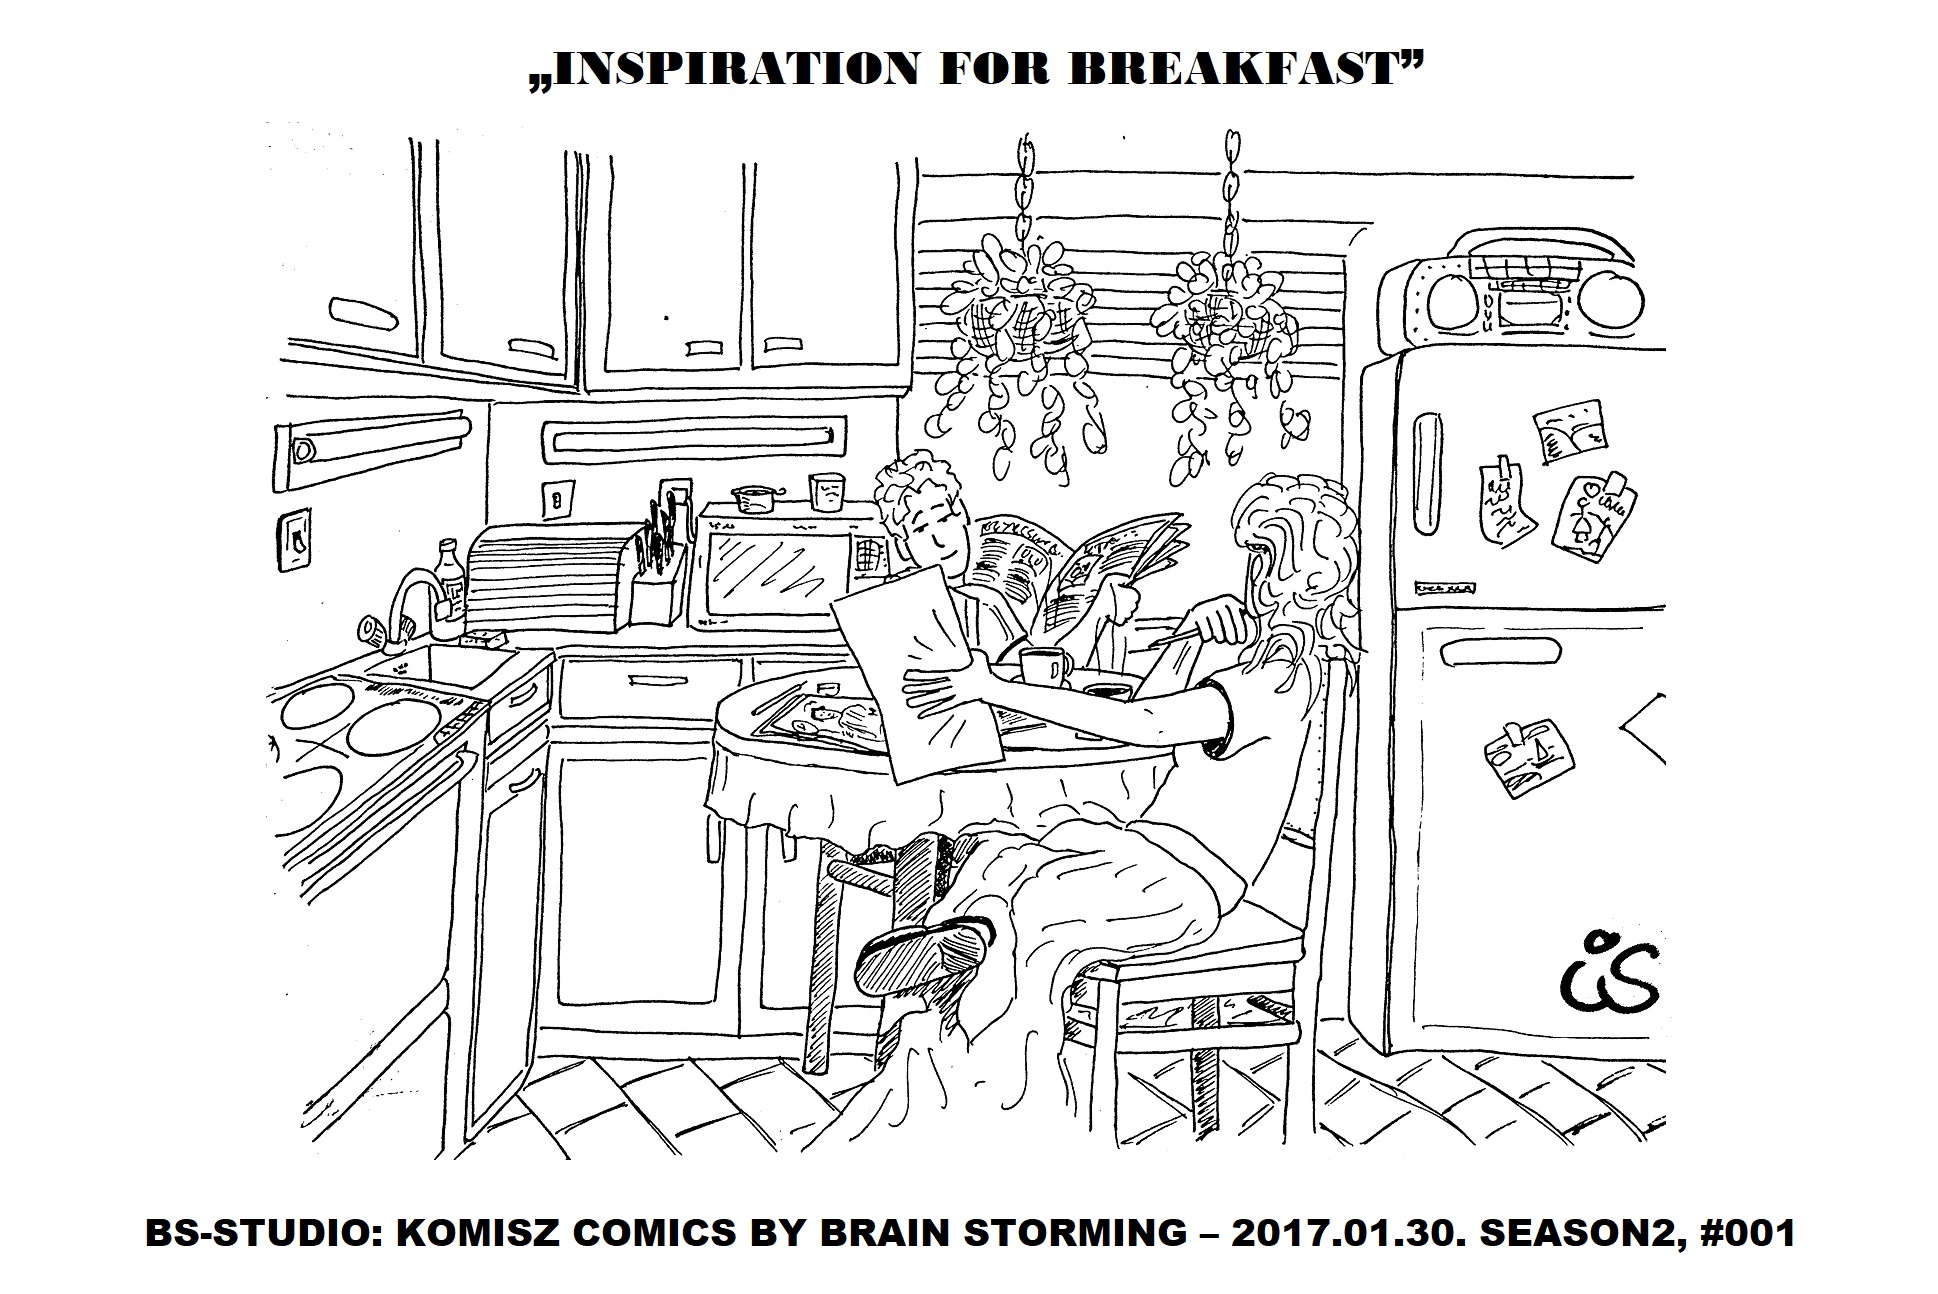 01_30_inspiration_for_breakfast.JPG